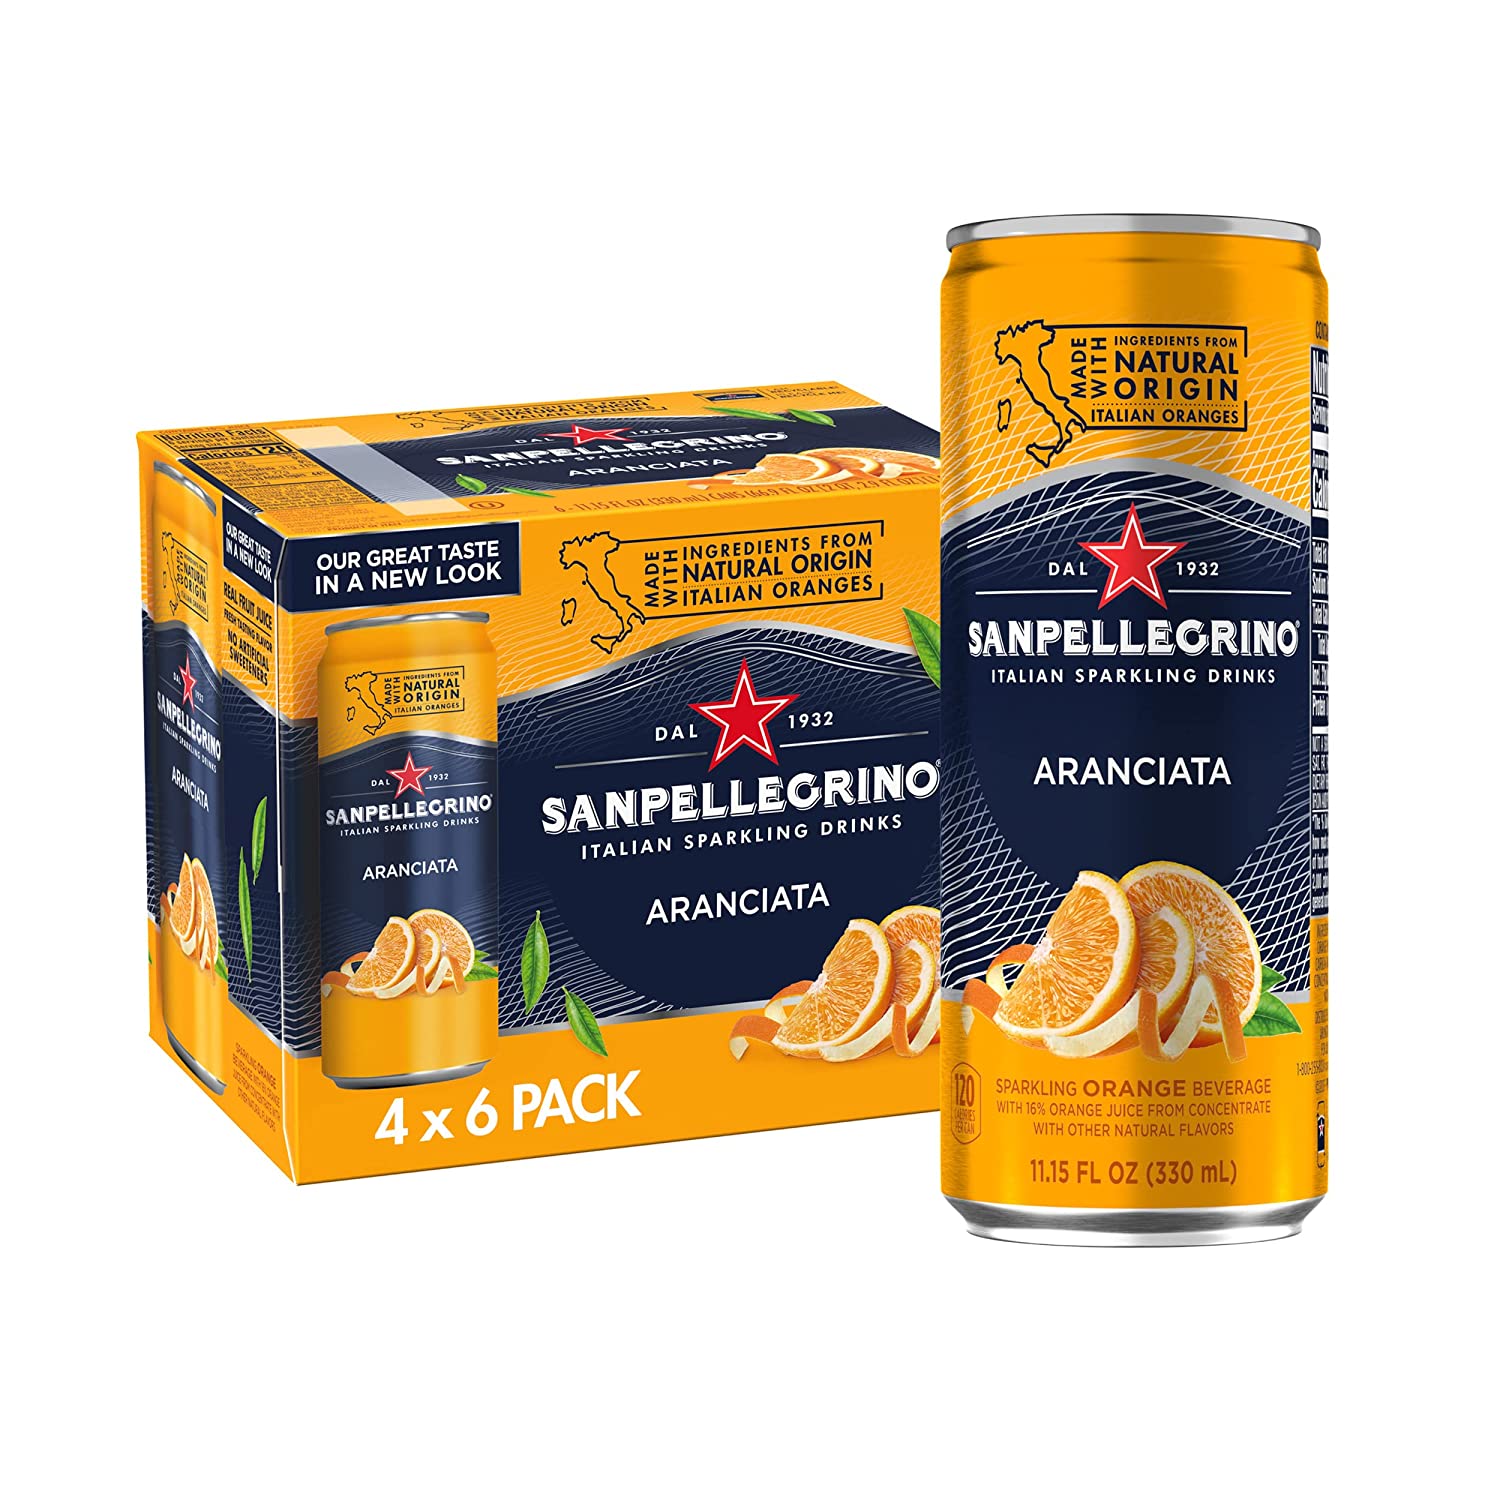 Sanpellegrino Italian Sparkling Drink Aranciata, Sparkling Orange Beverage, 24 Pack of 11.15 Fl Oz Cans $18.37